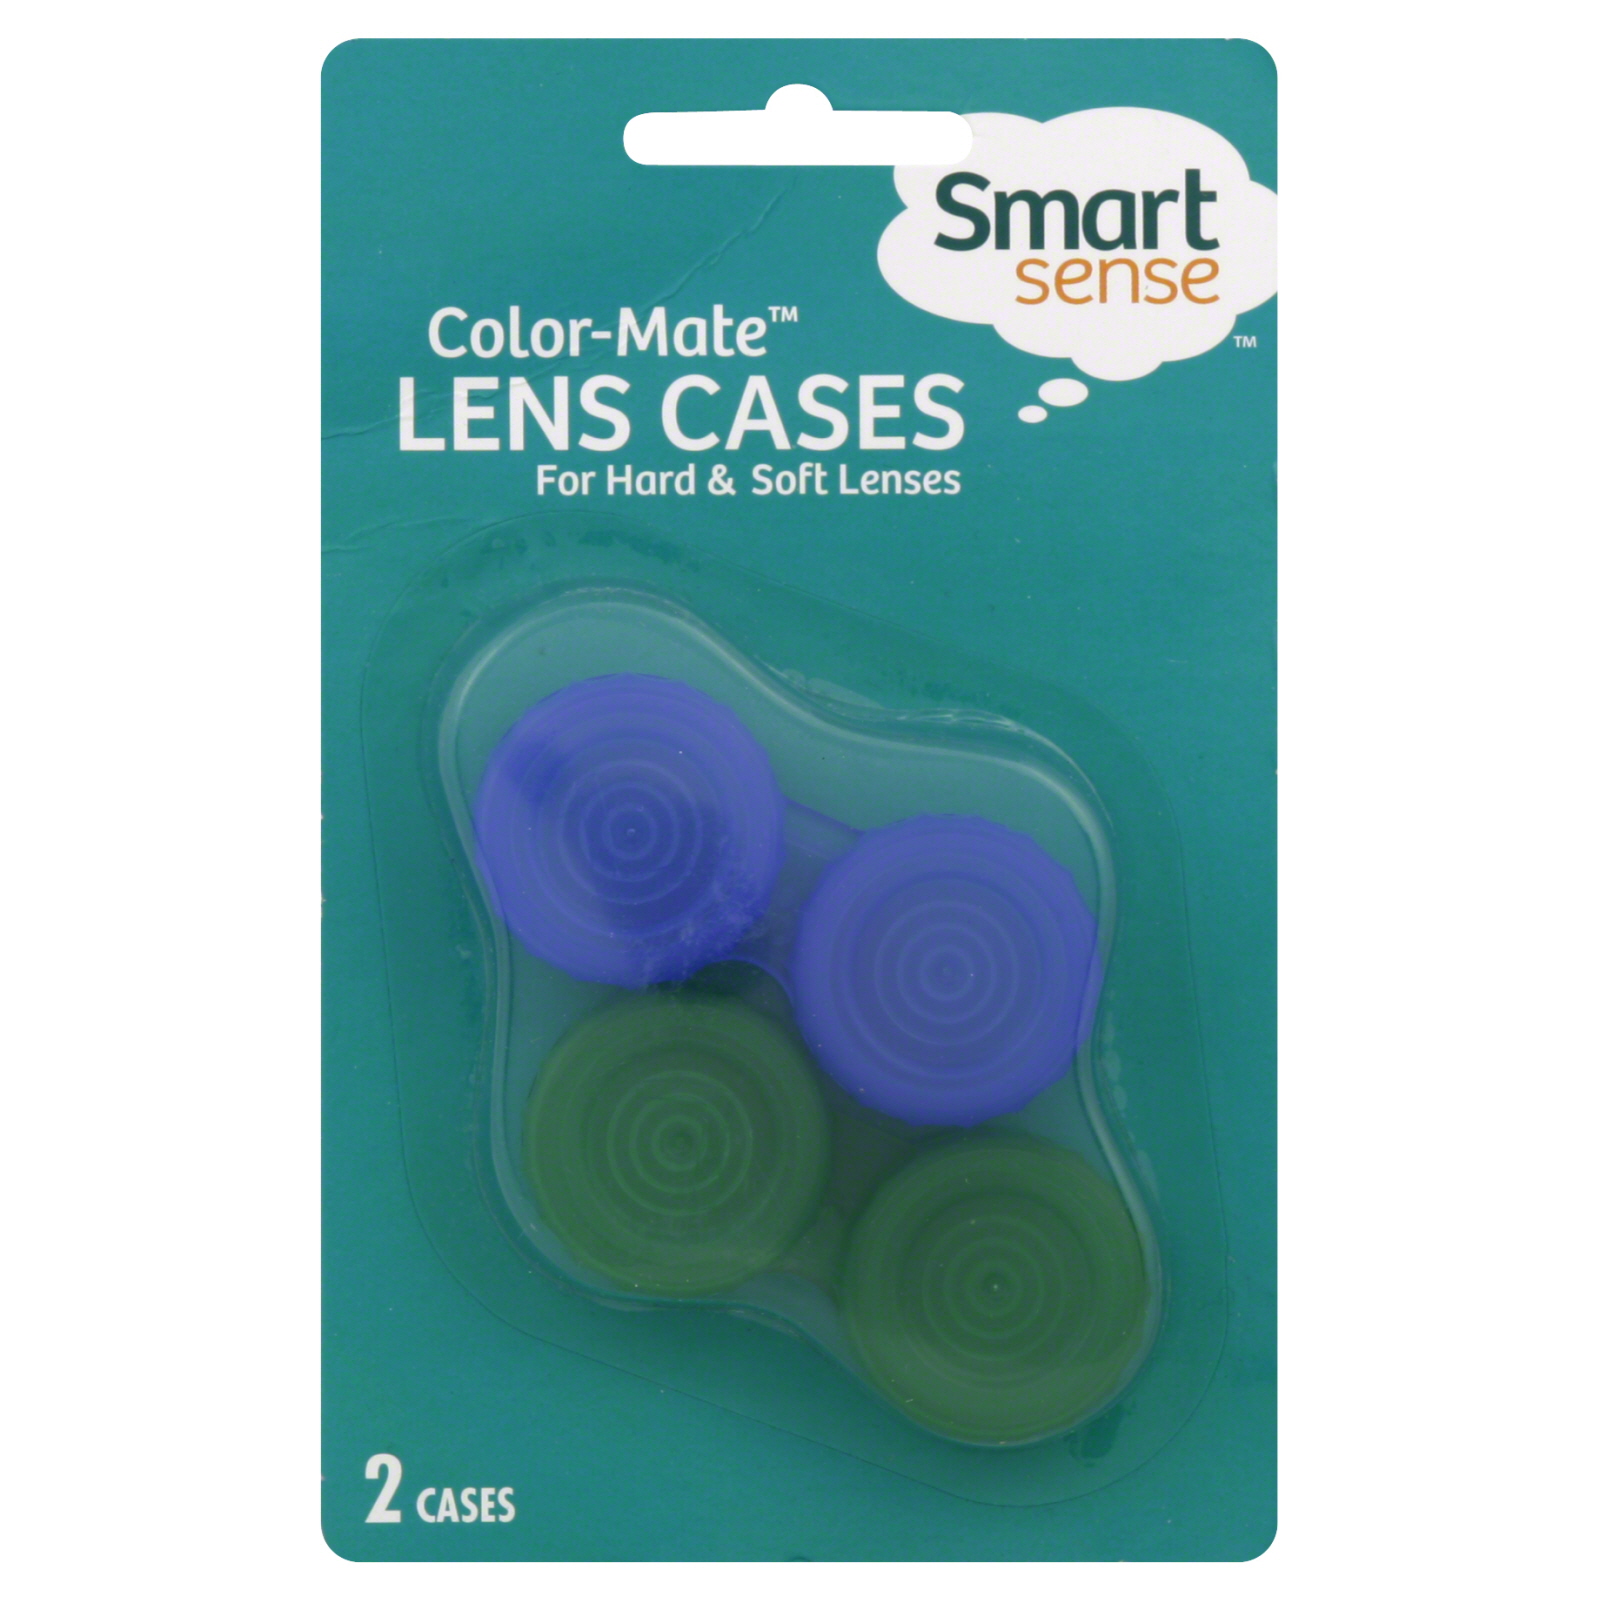 Smart Sense Lens Cases, Color-Mate 2 cases